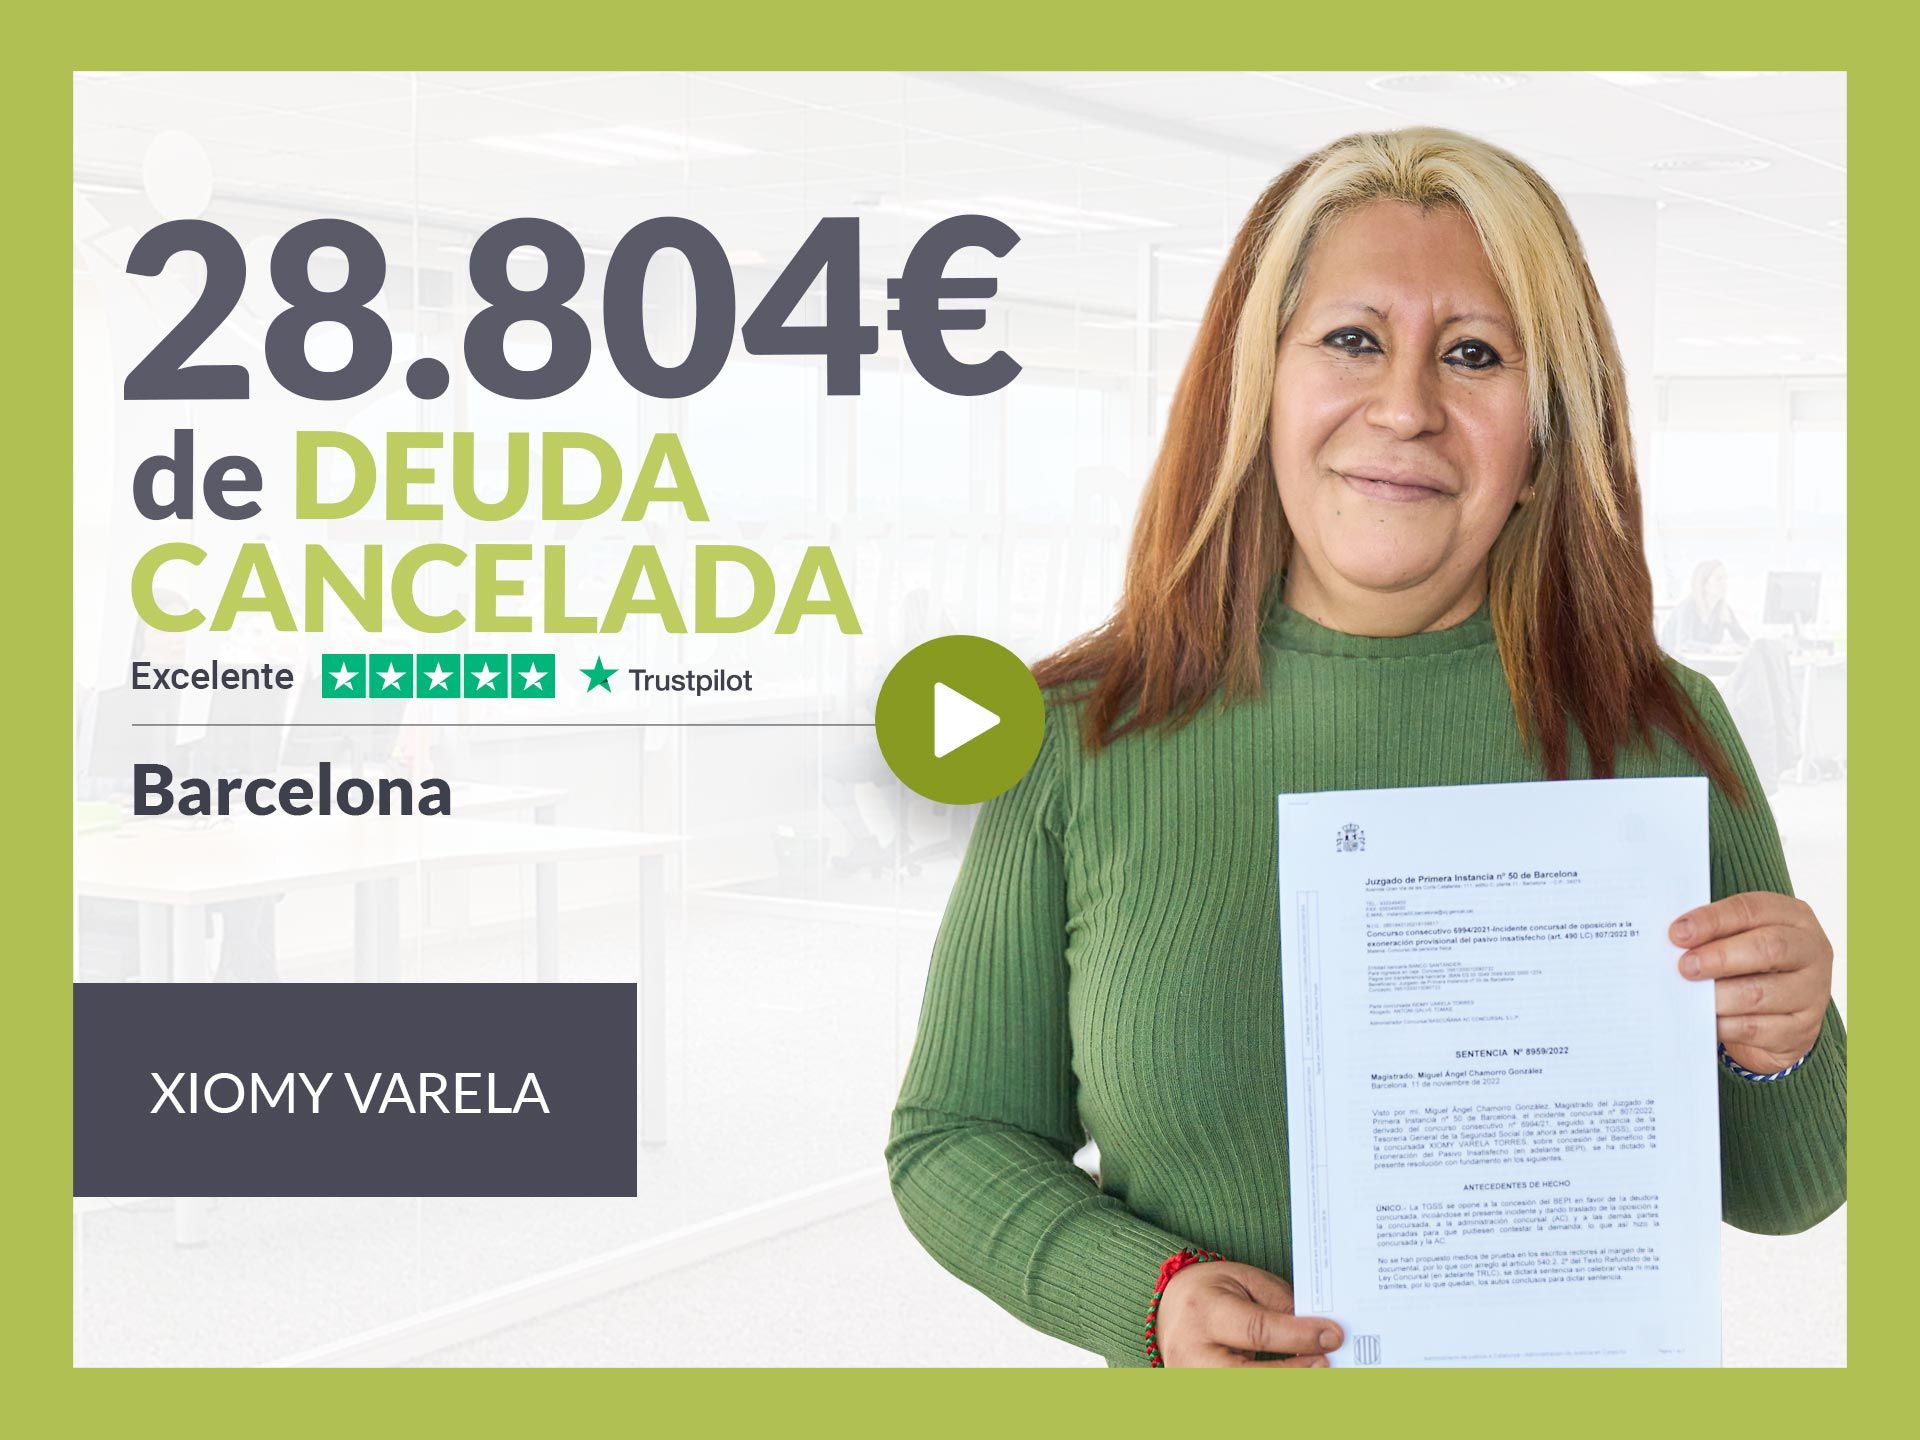 Repara tu Deuda Abogados cancela 28.804? en Barcelona (Catalunya) con la Ley de Segunda Oportunidad